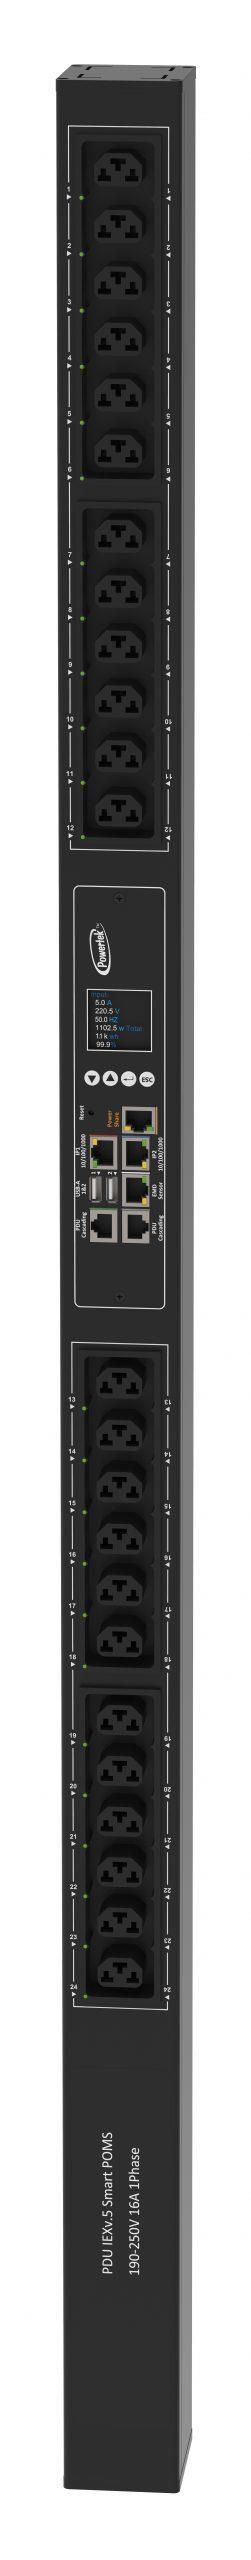 Powertek Intelligent PDU 230V, 1 fase, 16amp, låsning af power kabler, C13/C19 kombination i samme udtag, 24 udtag redundant netværks mulighed, OLED display, overvågning af sikringer